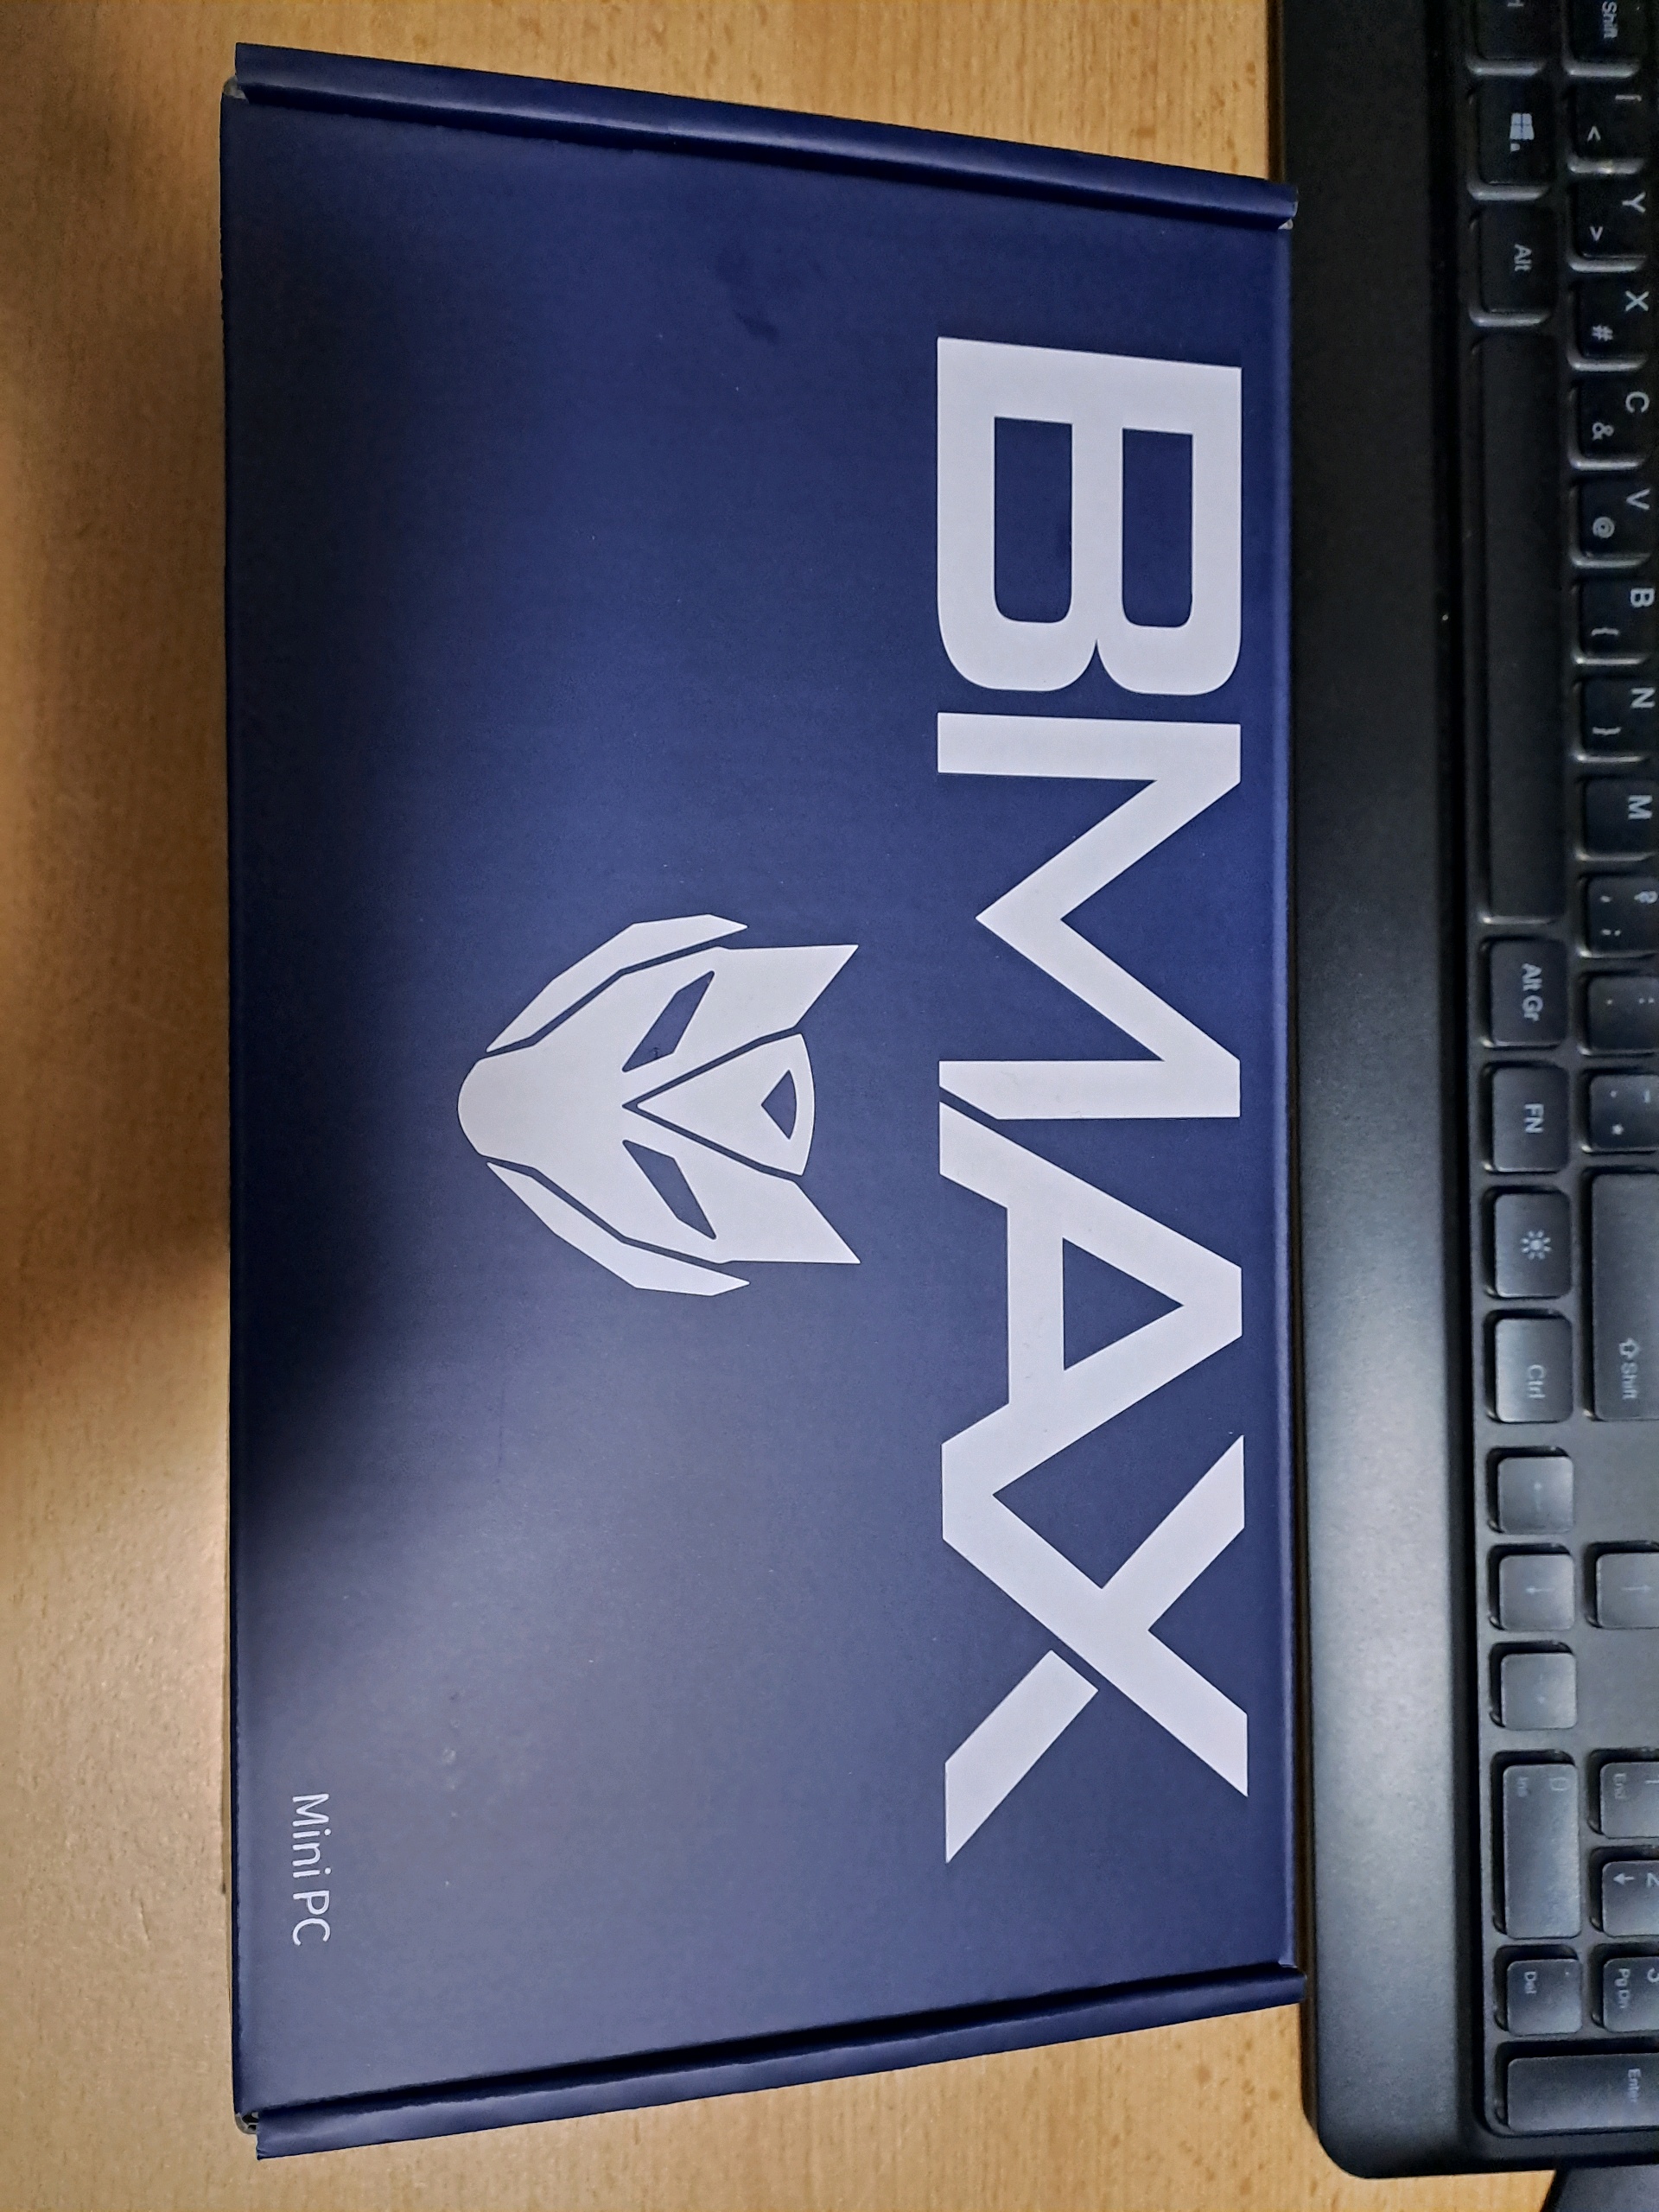 Kipróbáltunk egy Core i7-es mini PC-t – BMAX B7 Power Mini PC teszt